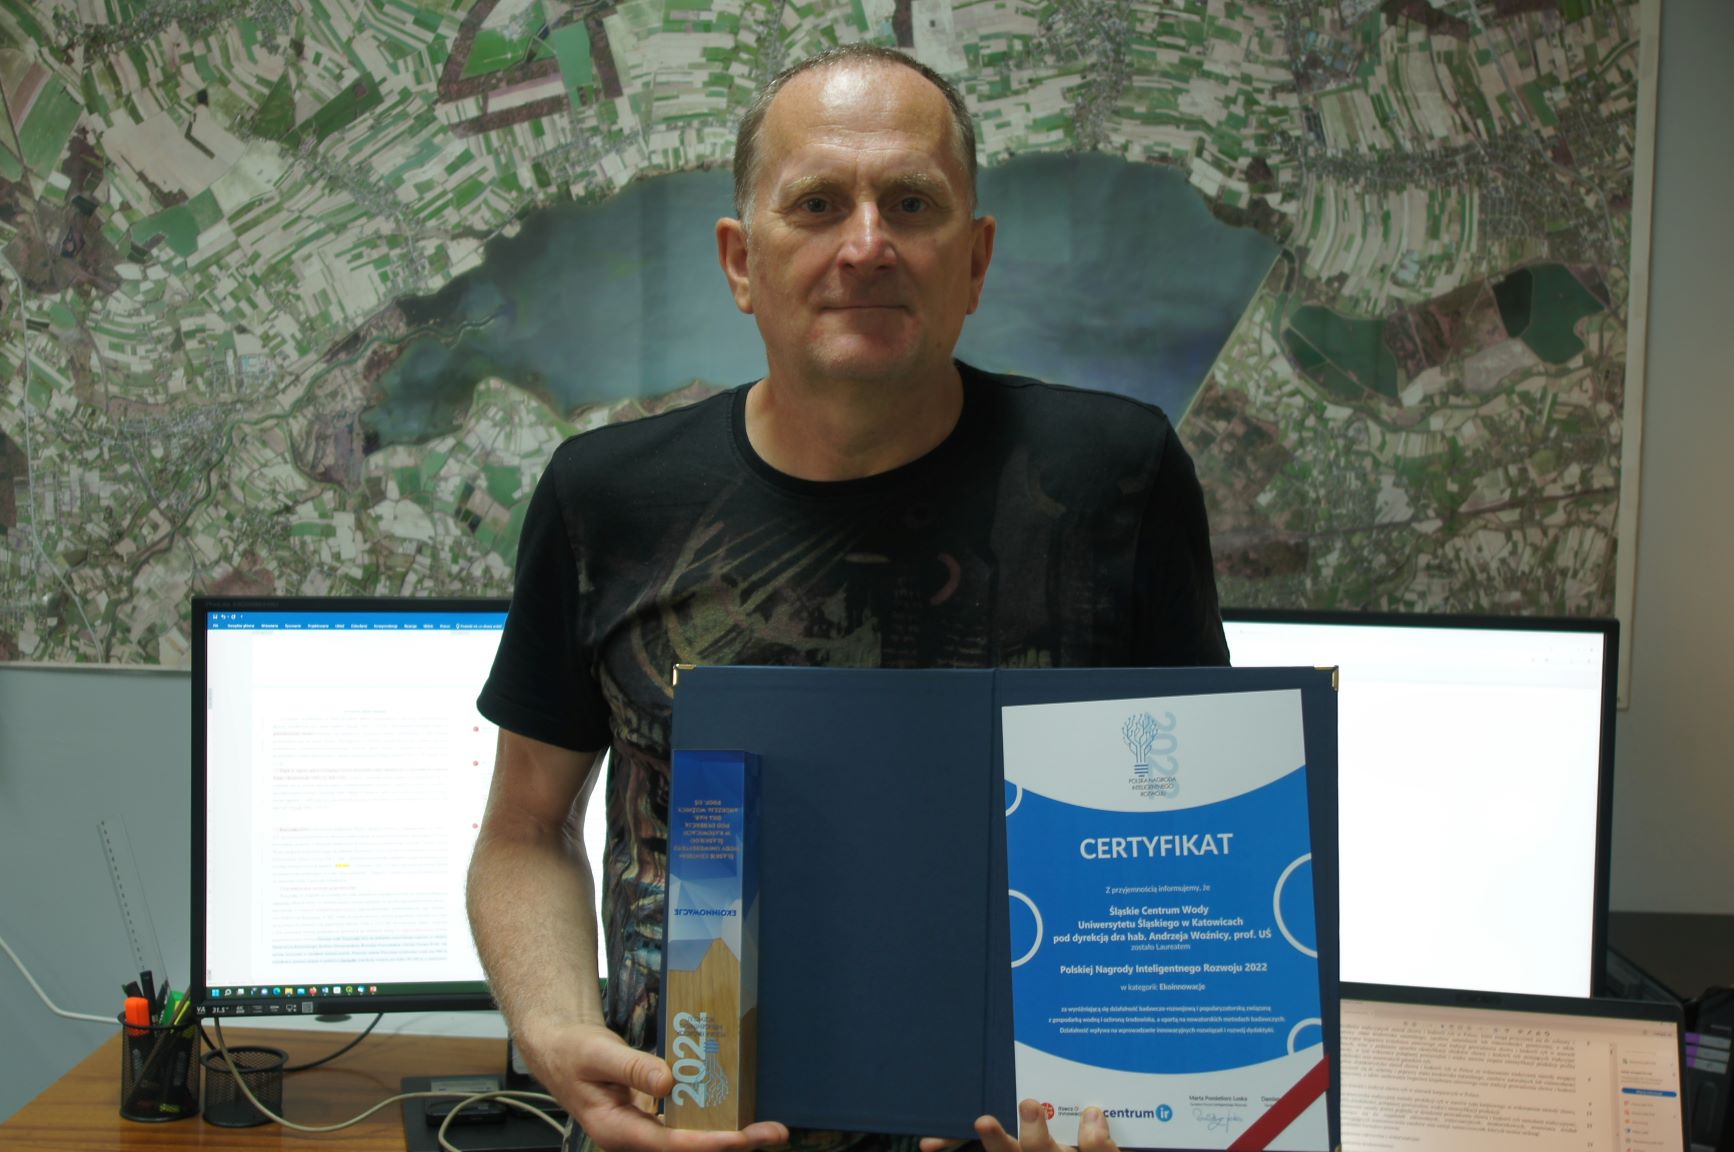 Prof. Andrzej Woźnica prezentuje nagrodę i dyplom. Za nim mapa na ścianie i świecące się monitory komputera